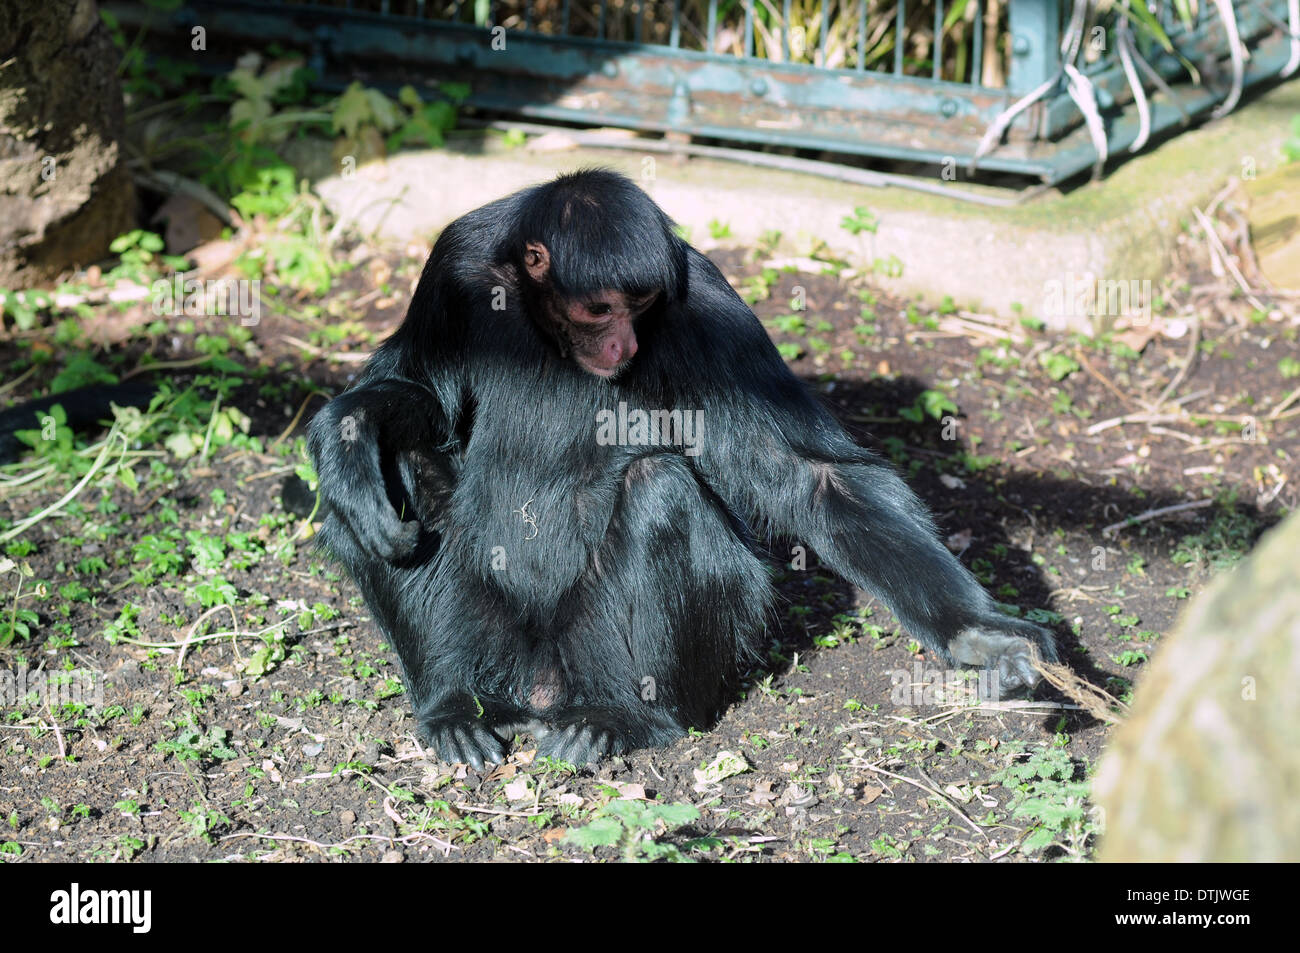 Monkey at Drusillas Zoo Stock Photo